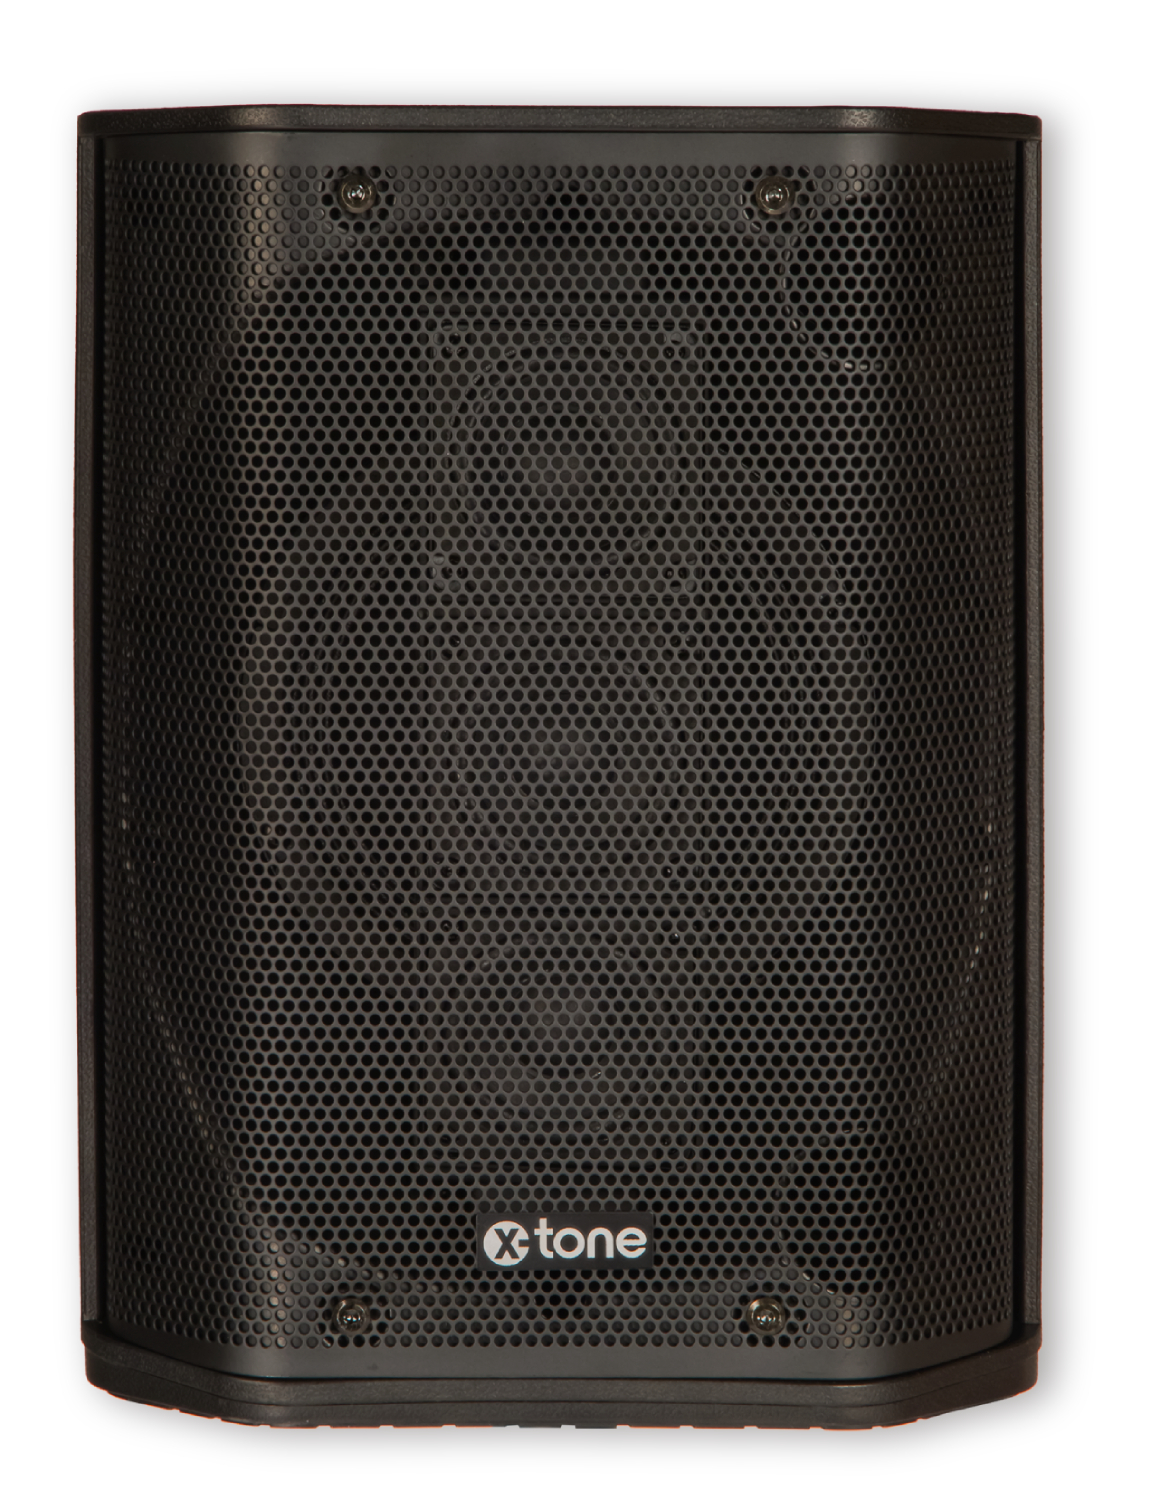 X-tone Y1-b - Portable PA system - Variation 3